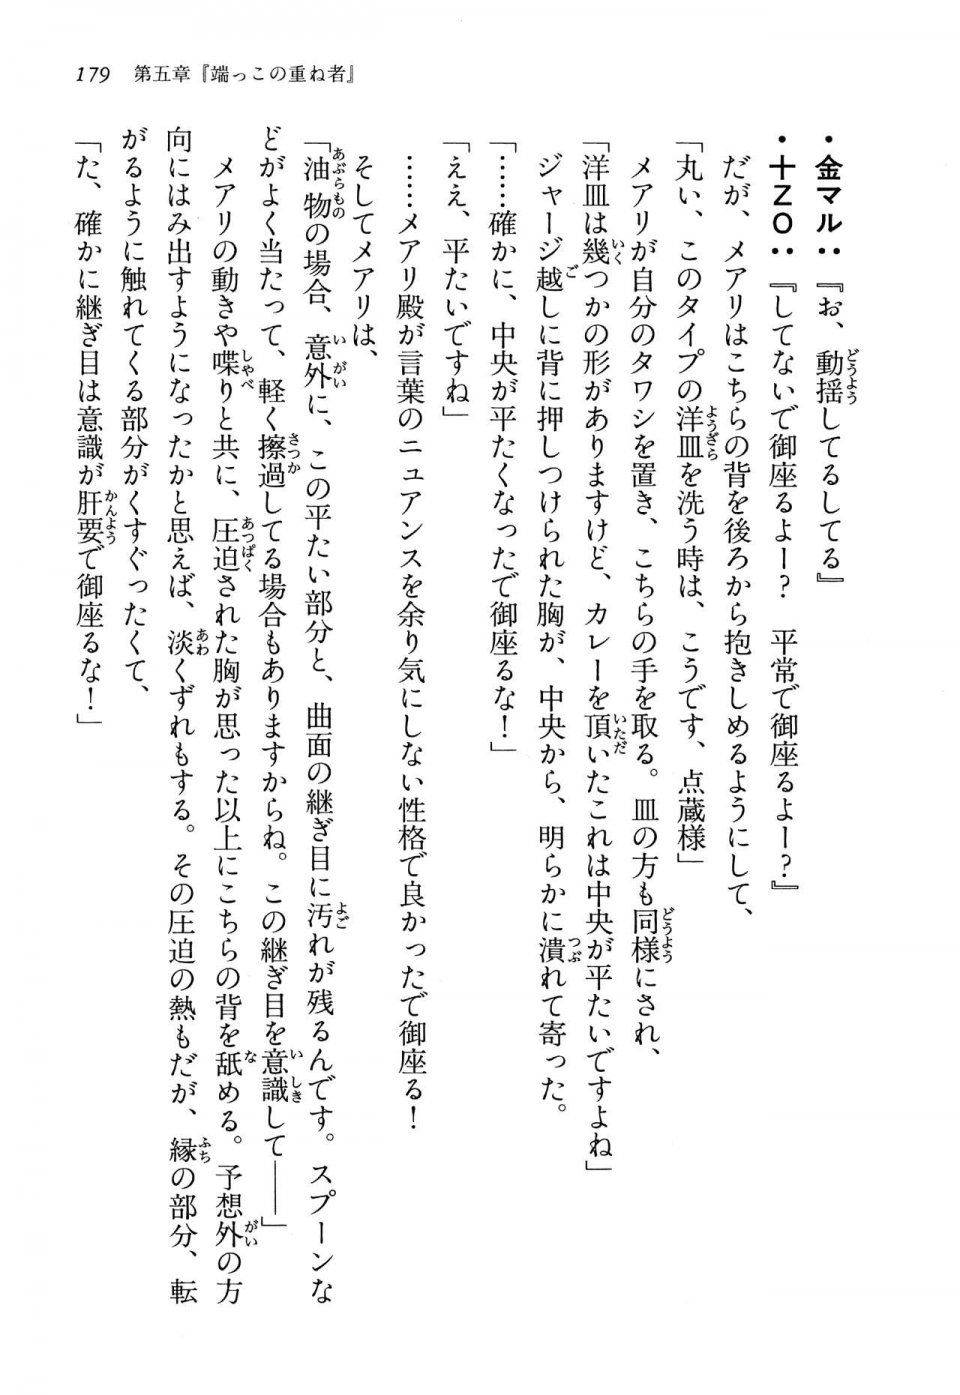 Kyoukai Senjou no Horizon LN Vol 13(6A) - Photo #179